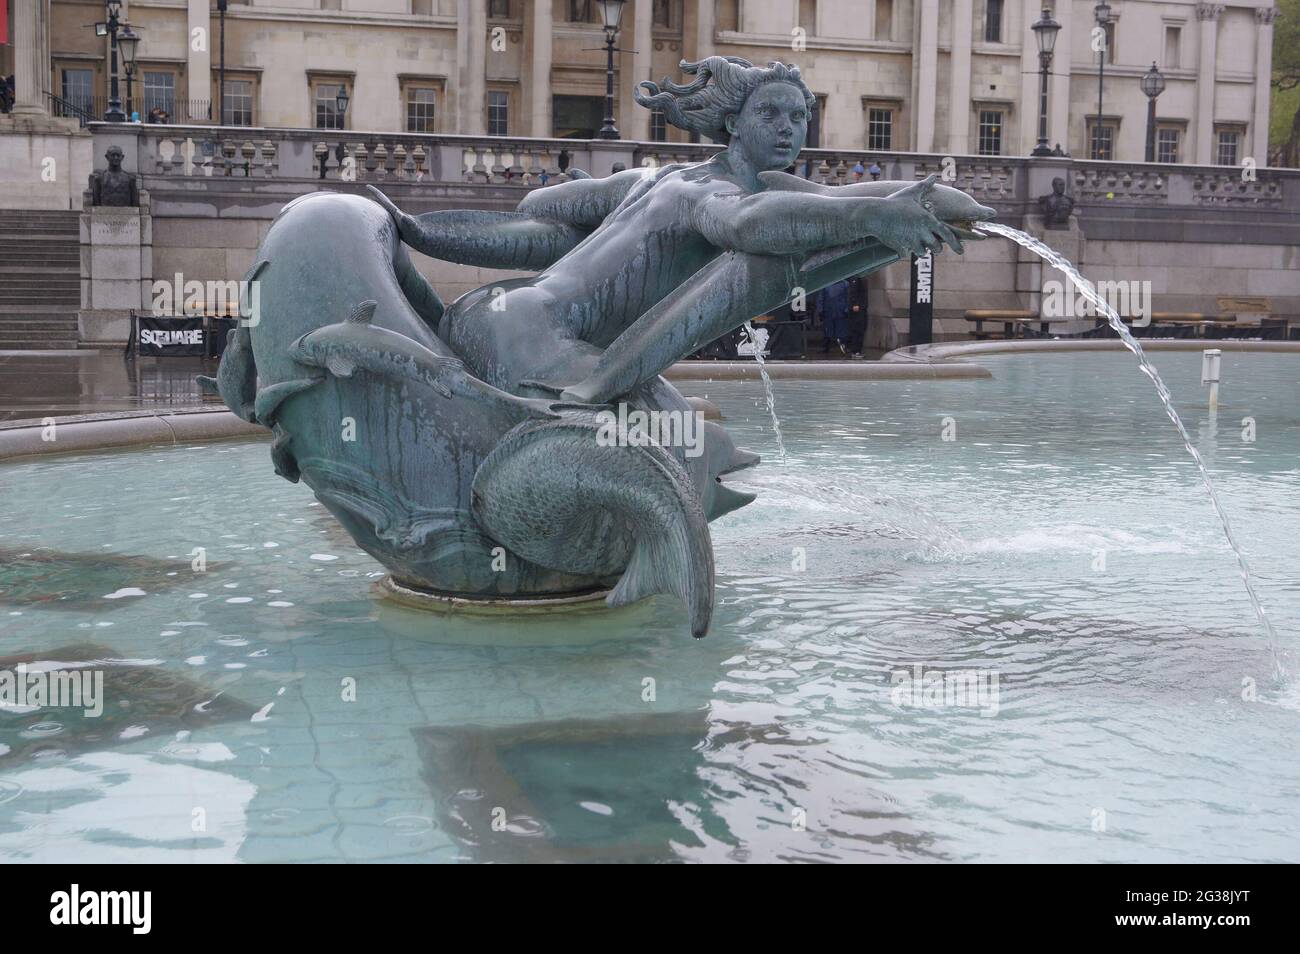 Londres, Royaume-Uni : l'une des statues de la sirène dans la fontaine de Trafalgar Square Banque D'Images